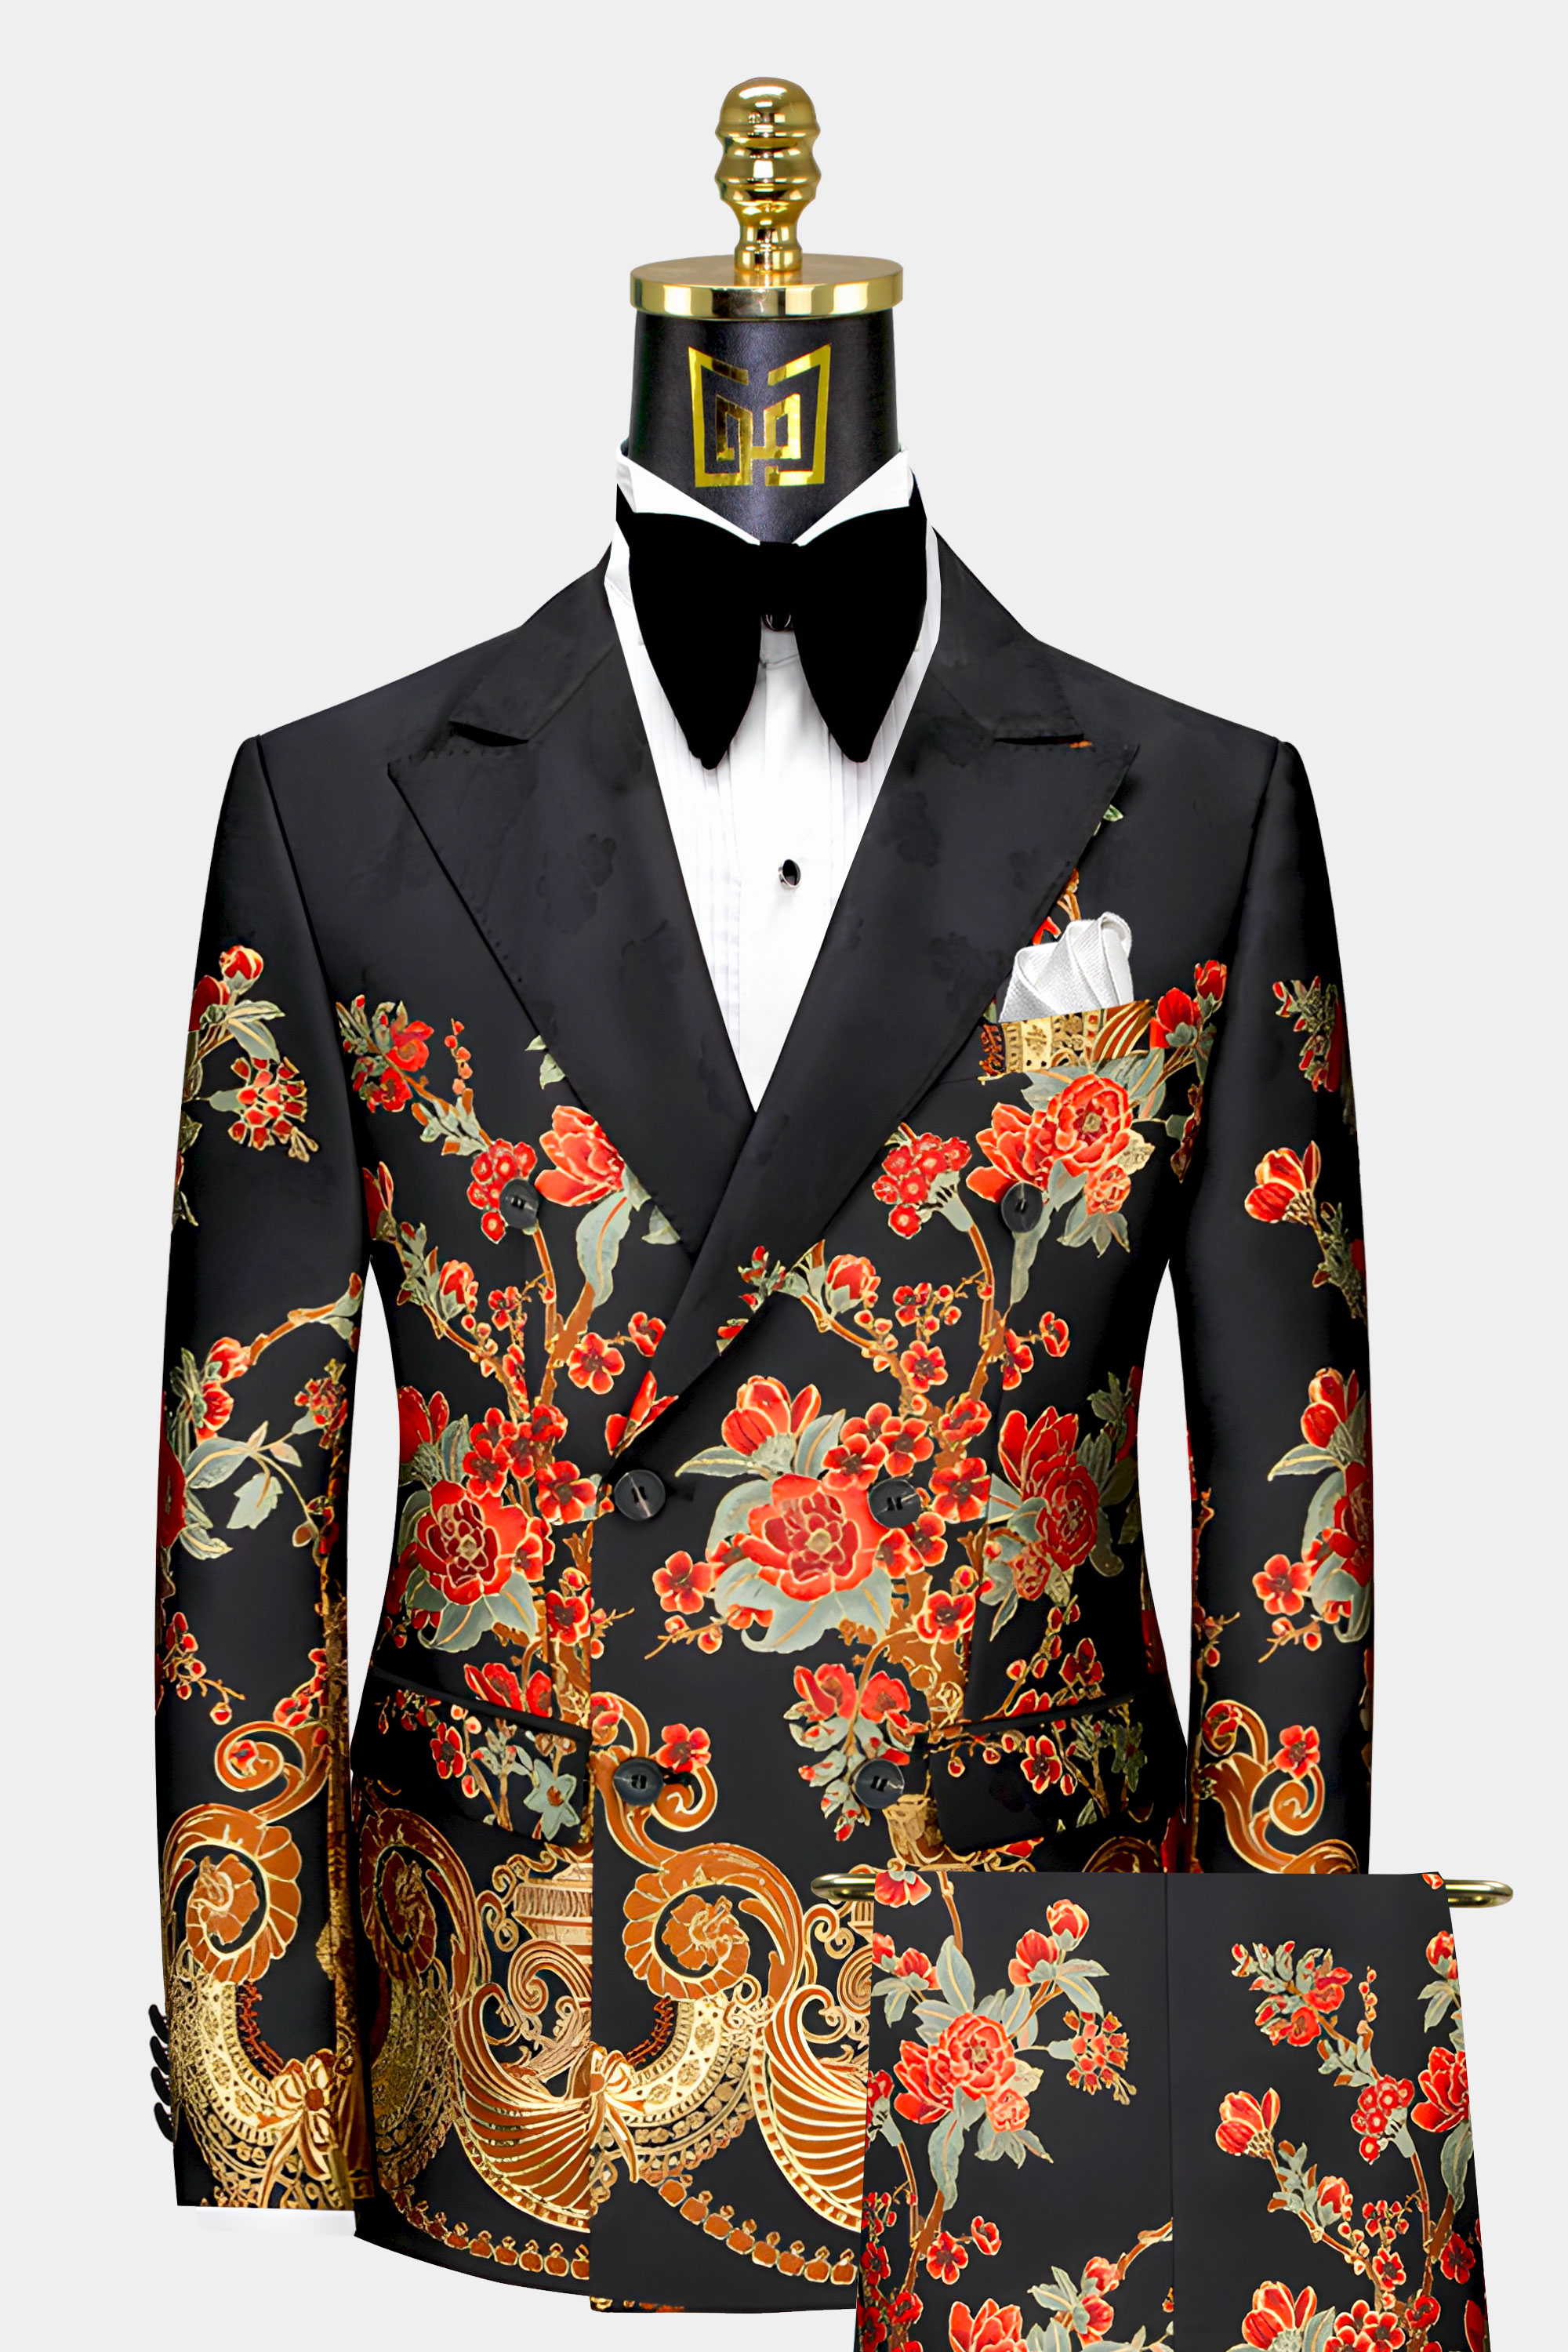 Mens-Black-and-Red-Suit-Groom-Wedding-Tuxedo-For-Men-from-Gentlemansguru.com